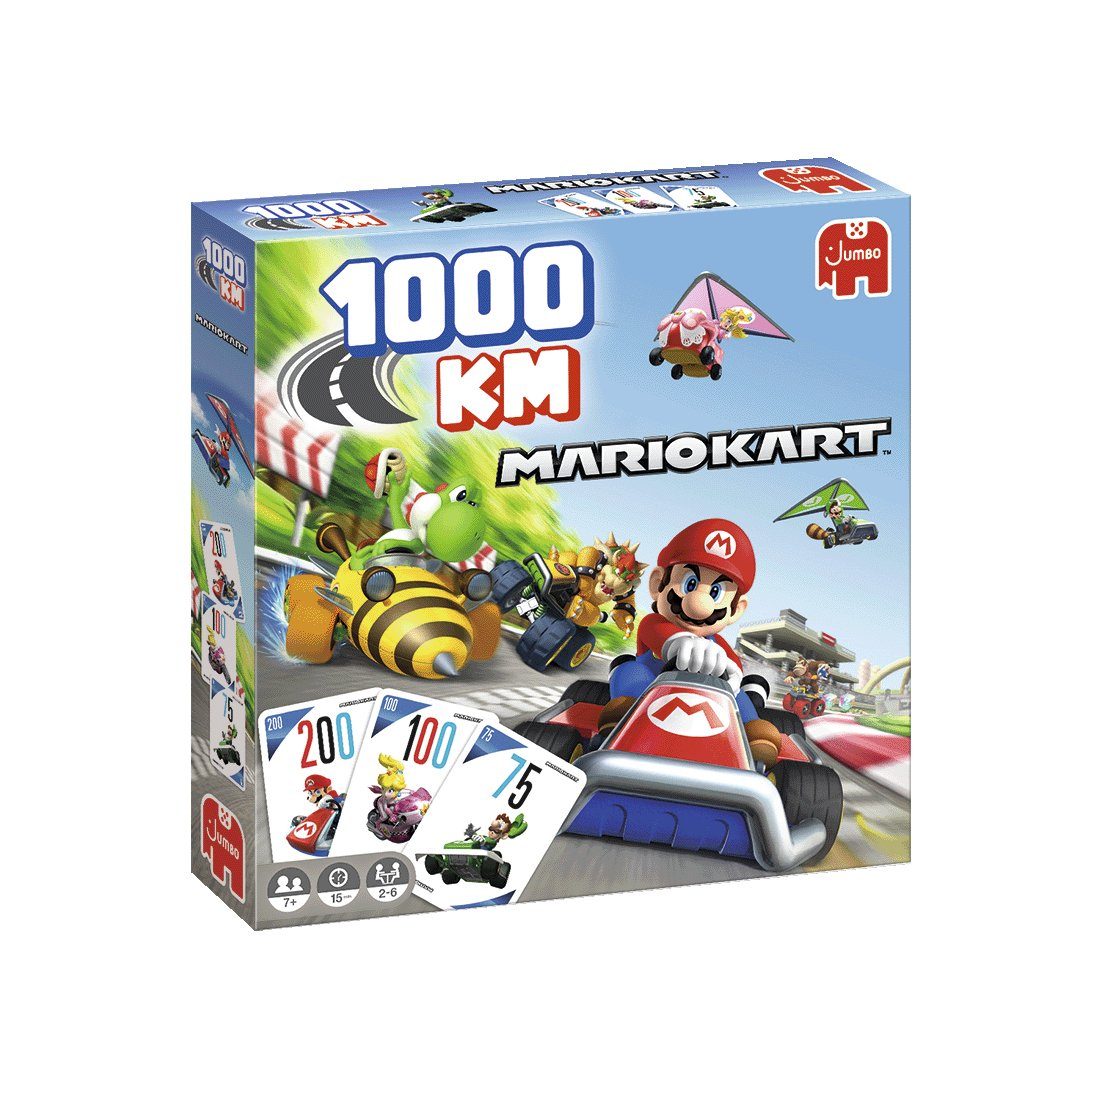 1000KM Jumbo Kart Jumbo Spiel, Spiele Mario Familienspiel Spiele 1110100011